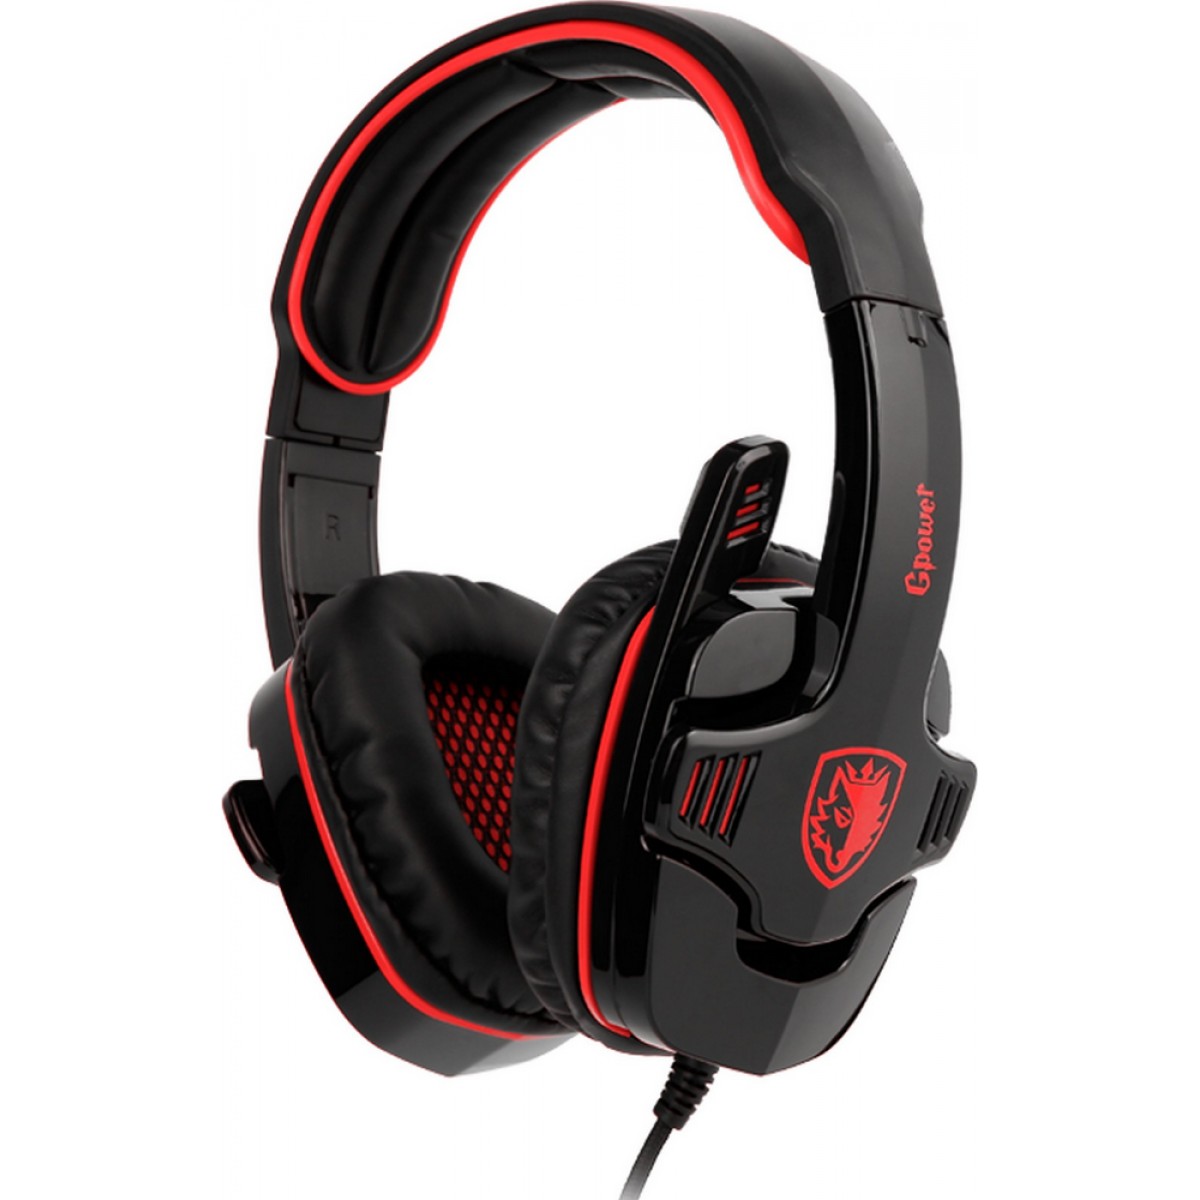 Headset Gamer Sades Sa-708 Gpower, Stereo, Black/Red, SA-708